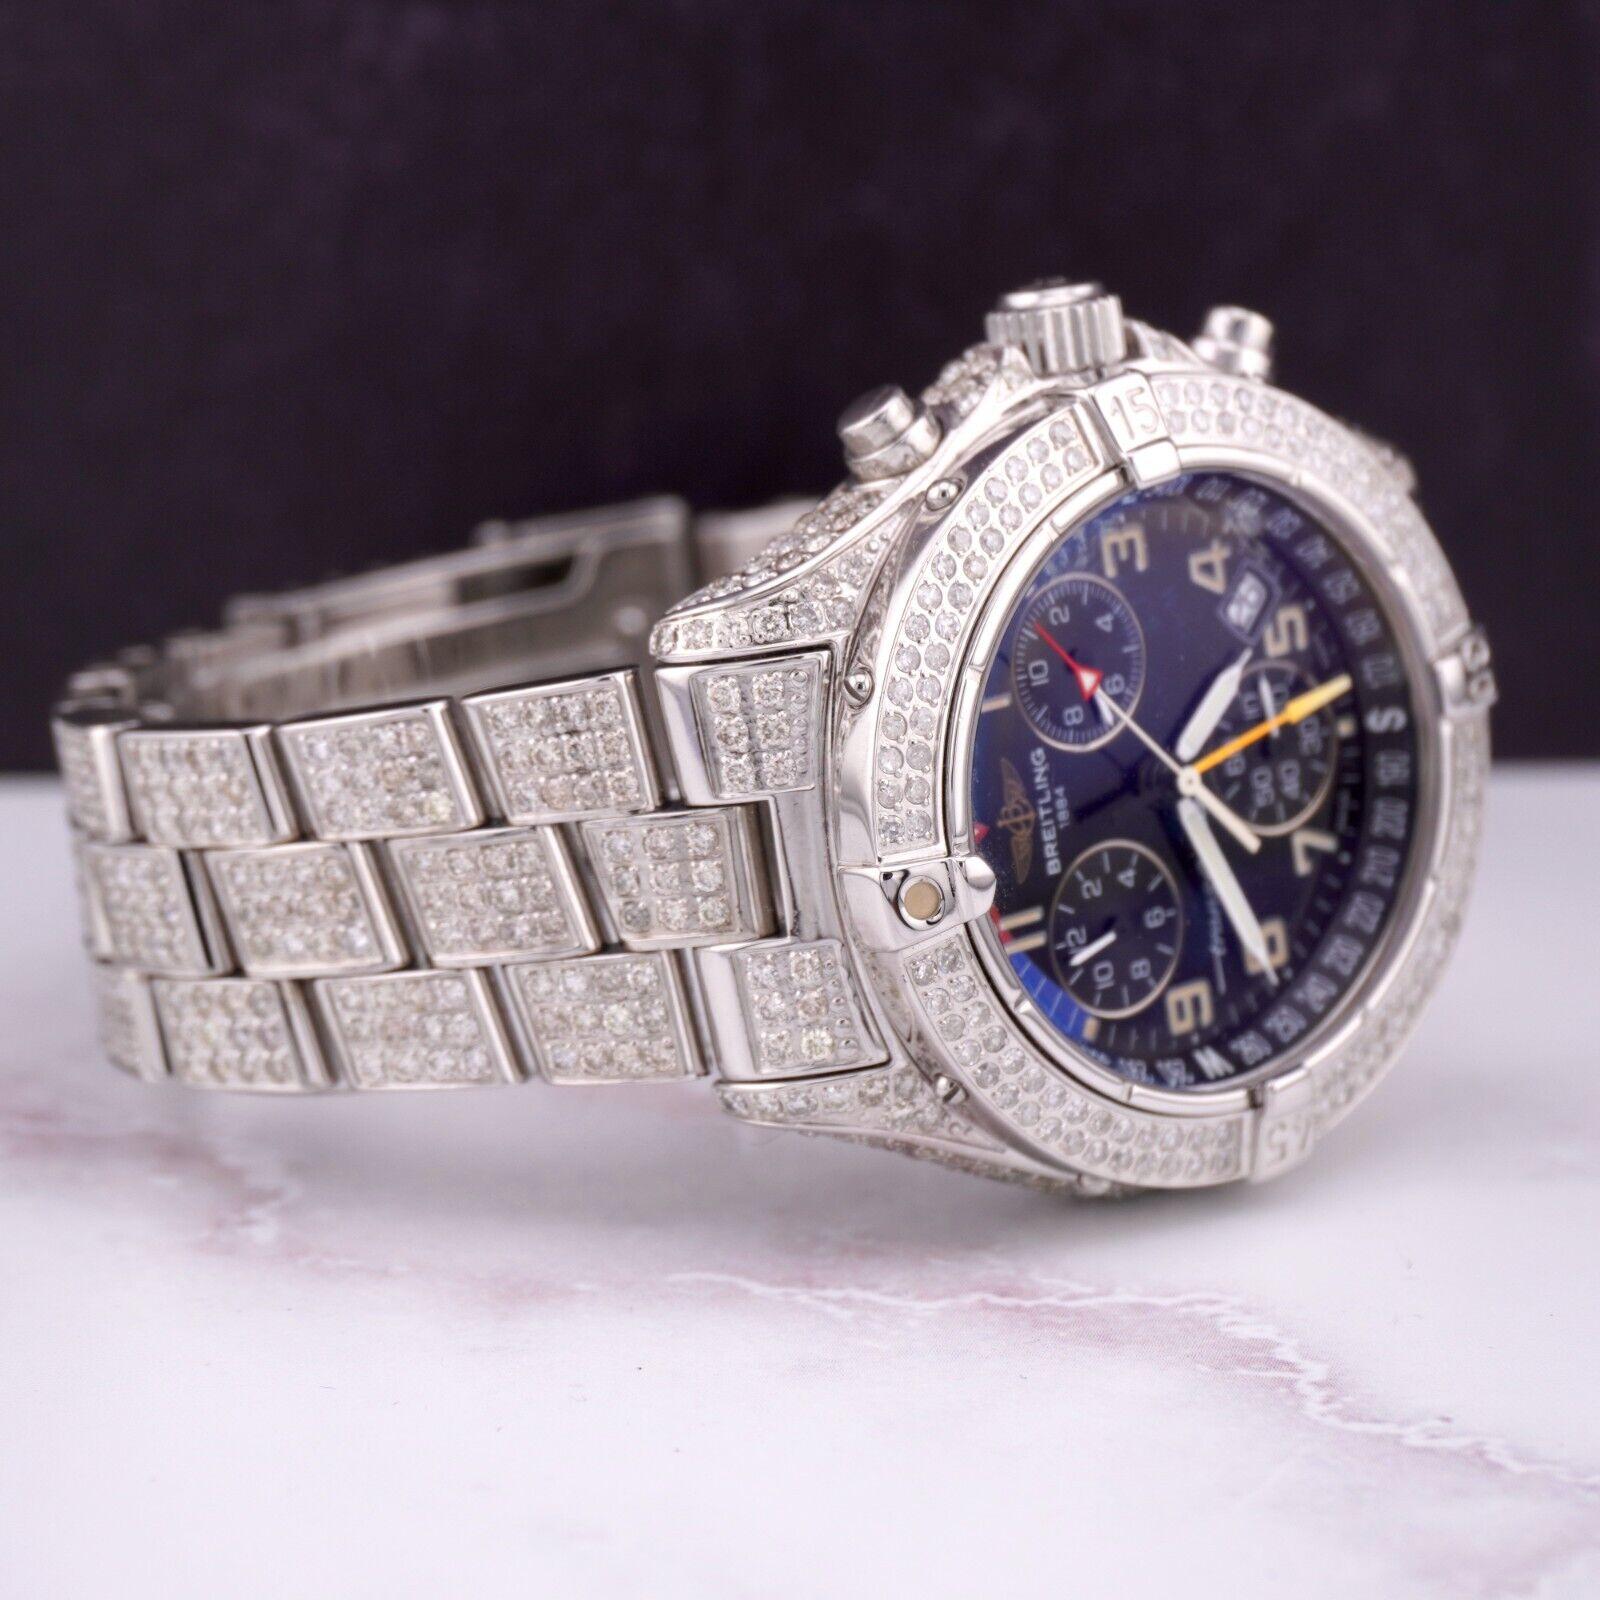 Breitling TransOcean Chrono 40mm Uhr. Ein Pre-owned Uhr w / Geschenk-Box. Uhr ist 100% authentisch und kommt mit Echtheitskarte. Watch Reference ist A53041 und ist in ausgezeichnetem Zustand (siehe Bilder). Das Zifferblatt weiß ist schwarz ist und